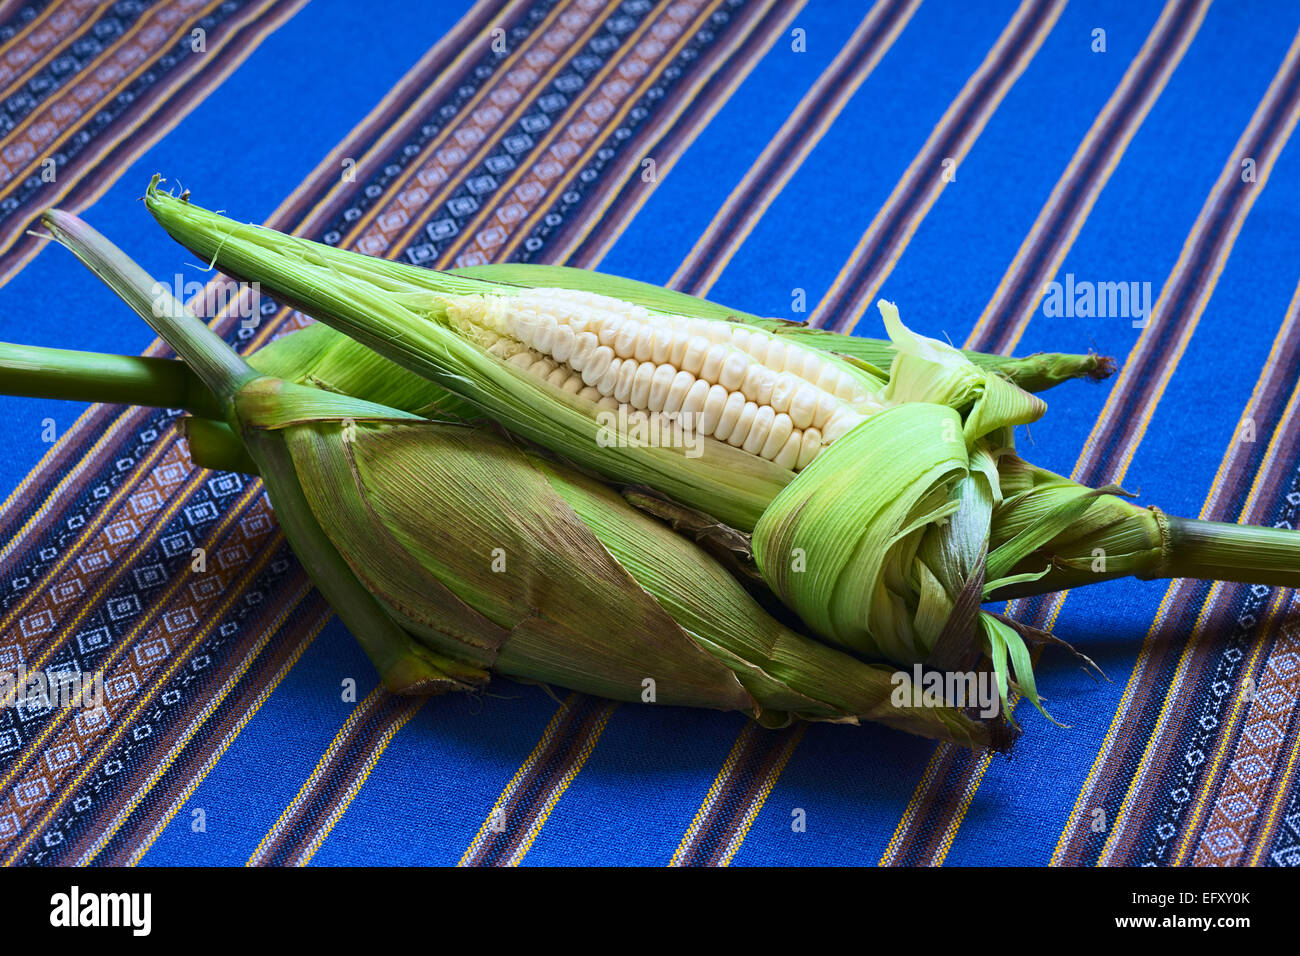 Weißer Mais Maiskolben genannt Choclo (Spanisch), im englischen peruanischen oder Cuzco Mais, in der Regel gefunden in Peru und Bolivien Stockfoto